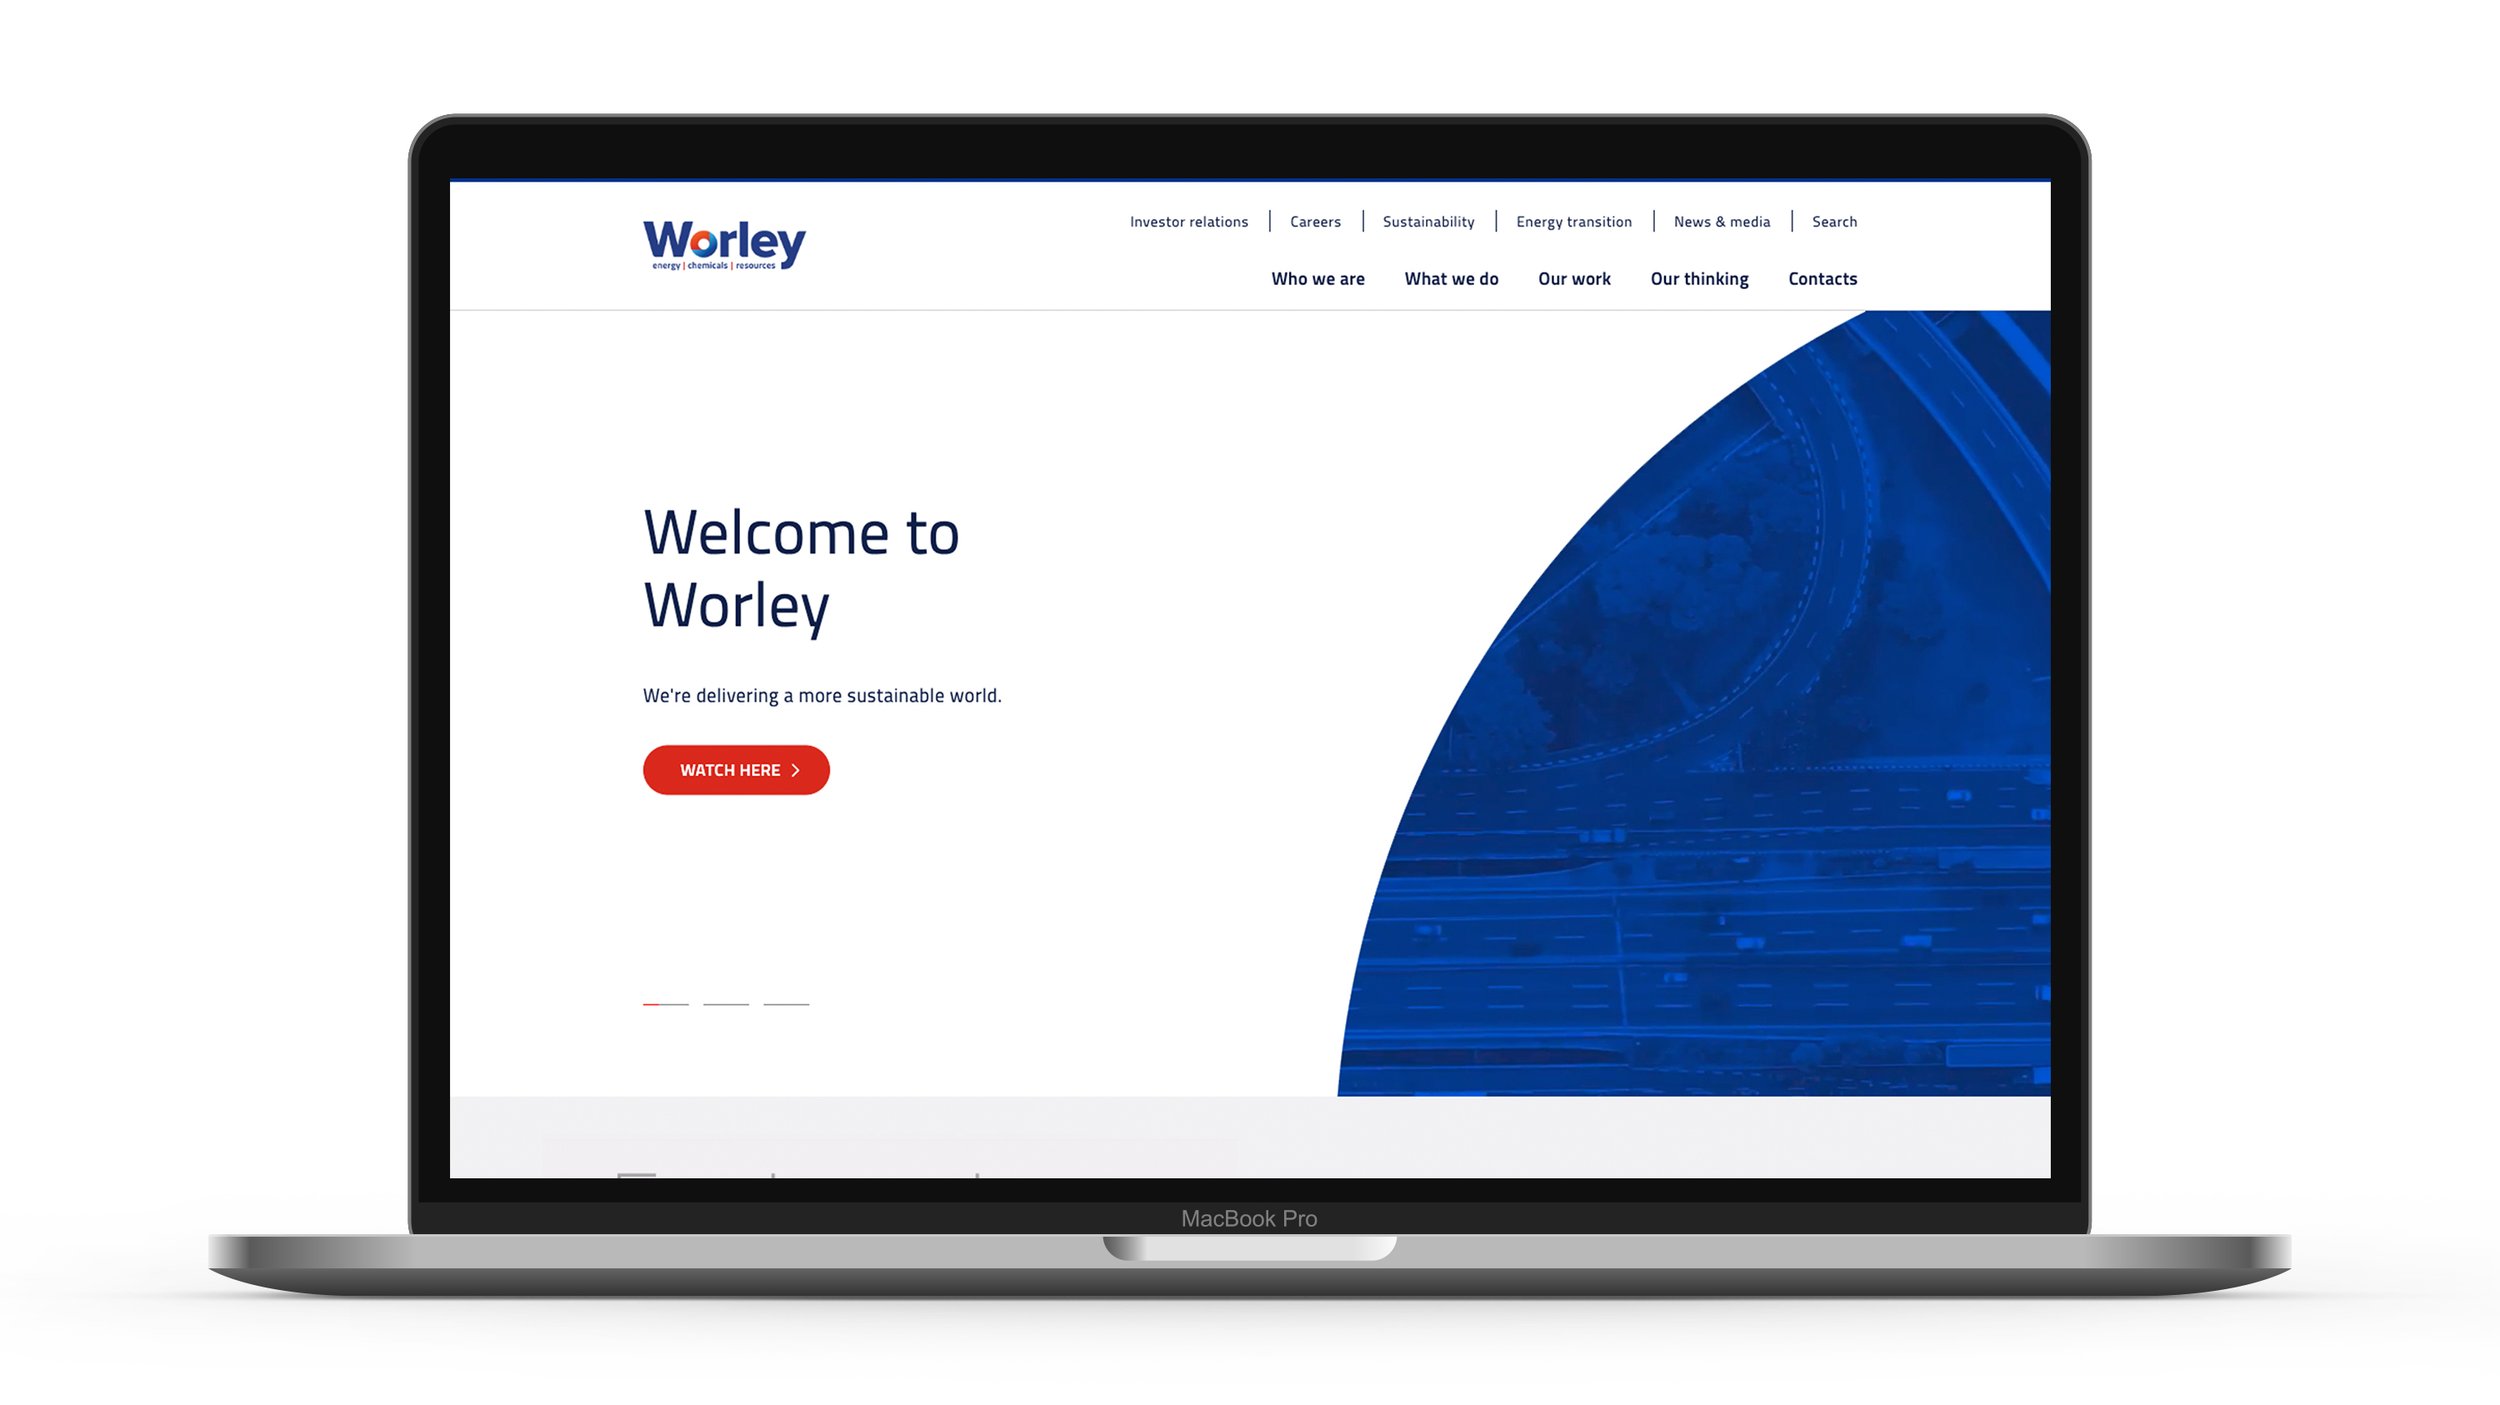 WorleyWebsite-DanielBell-1.jpg